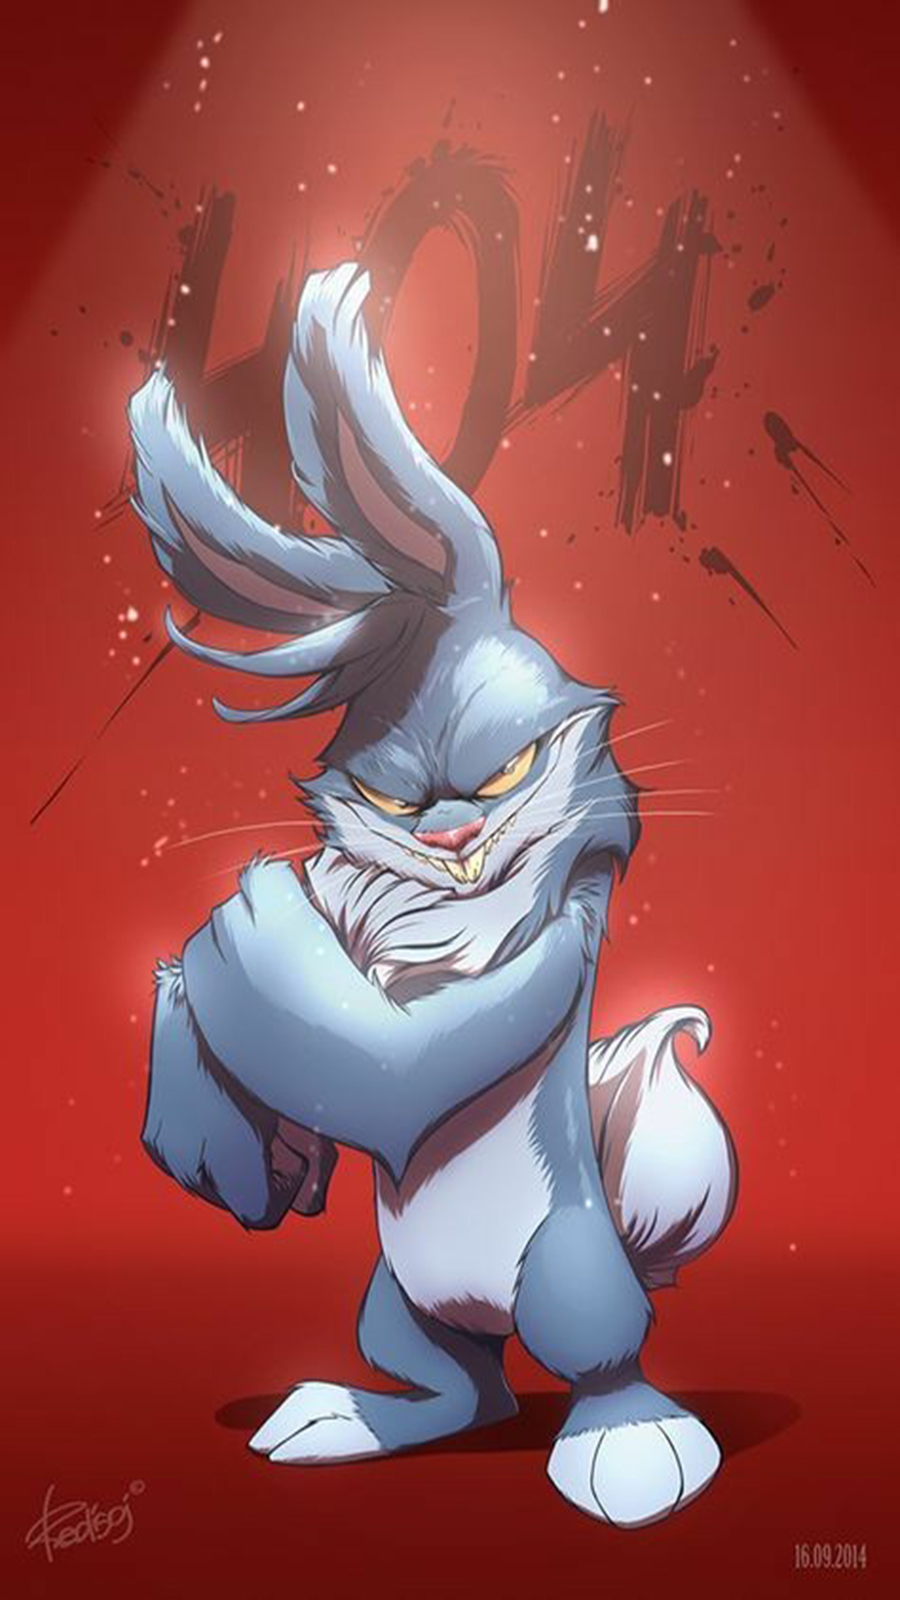 Monster Rabbit Cartoon Wallpapers Free Download – Best Wallpapers